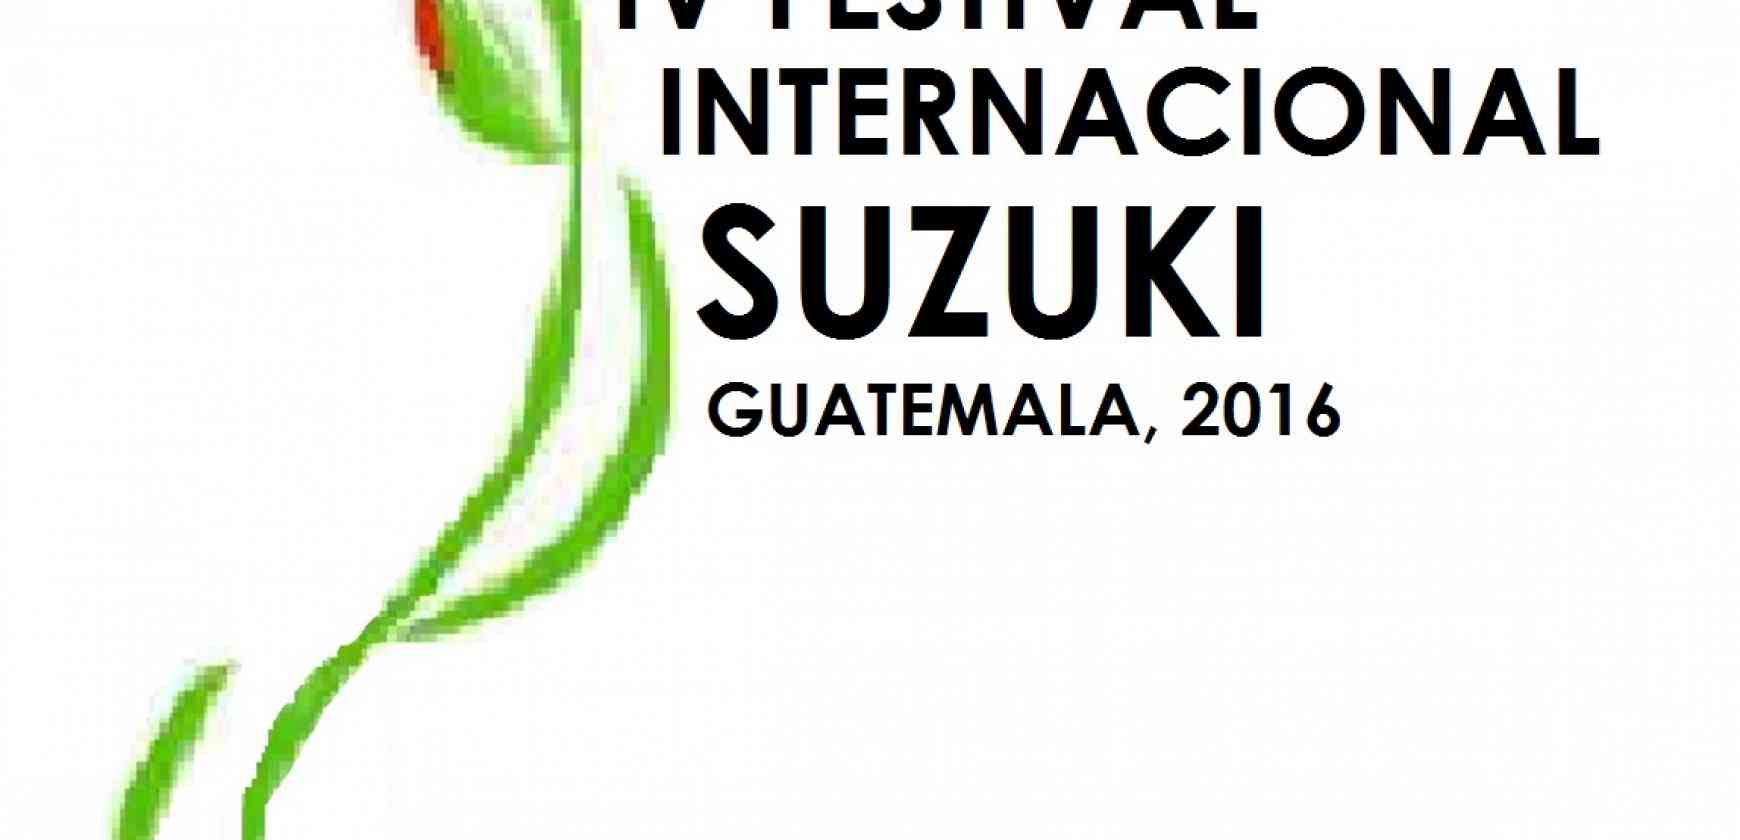 Asociación Suzuki de Guatemala